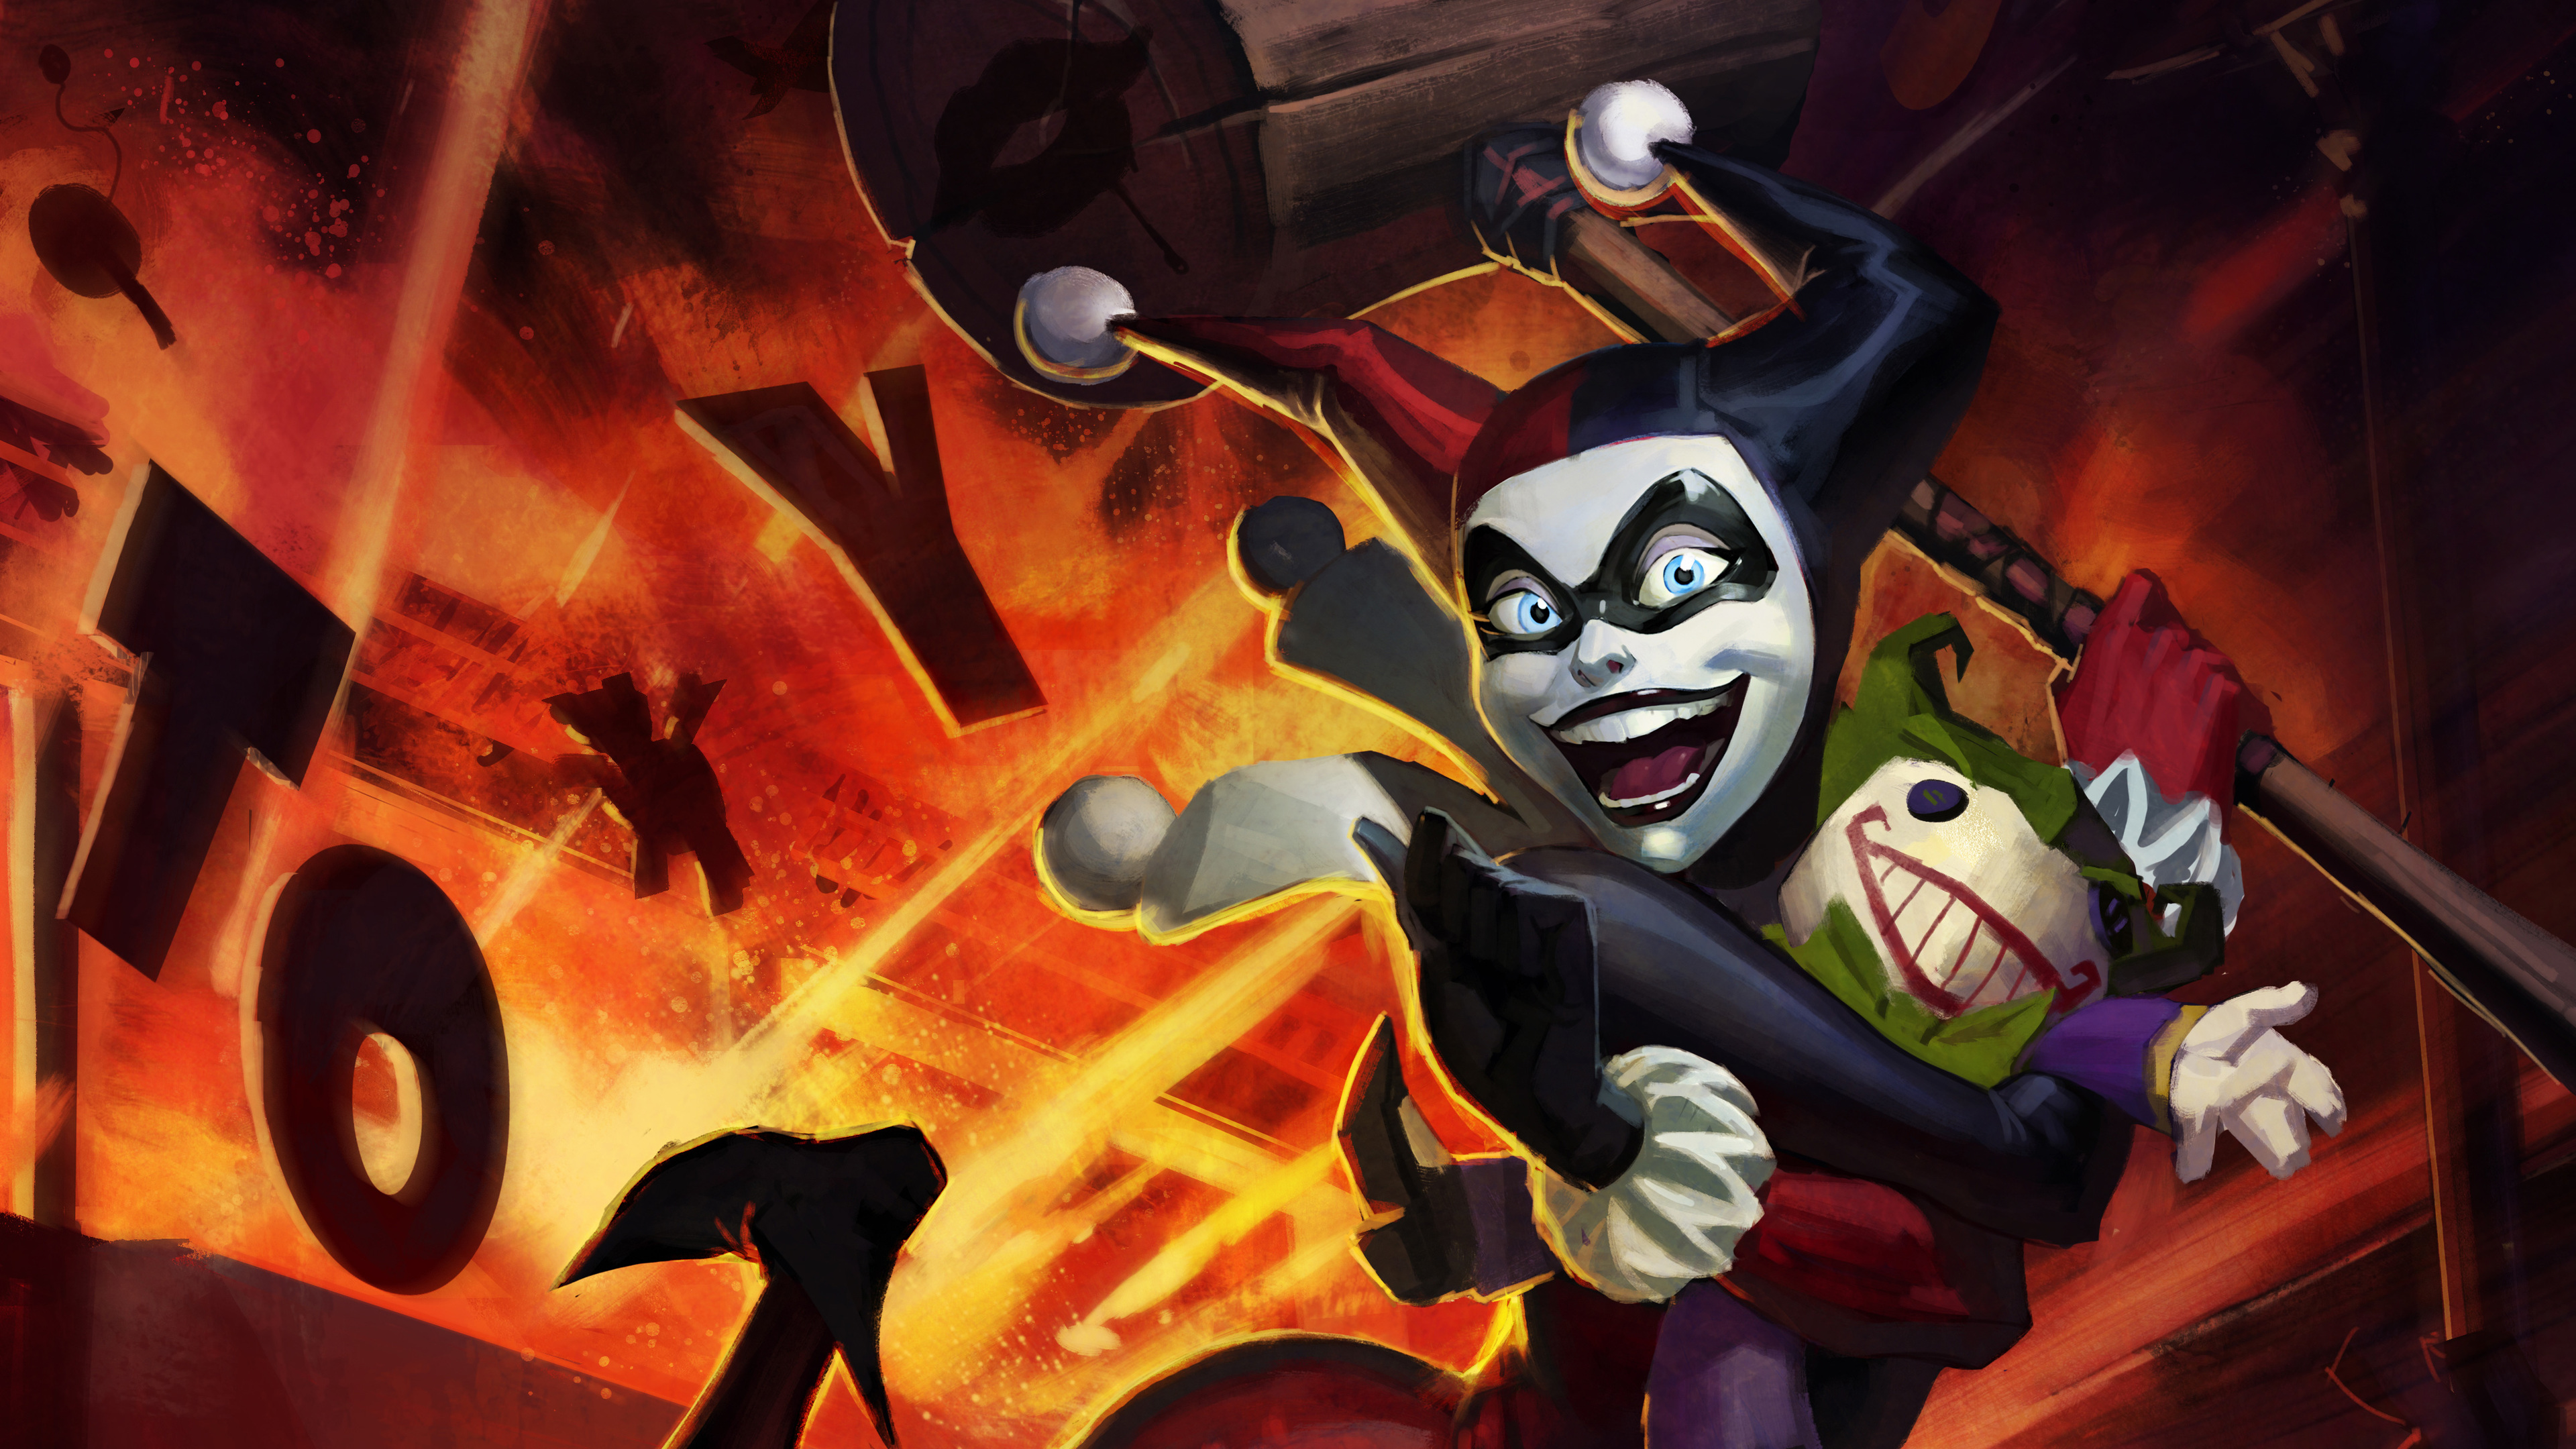 Harley Quinn Joker Artwork 4k - Joker Harley Quinn Artwork - HD Wallpaper 